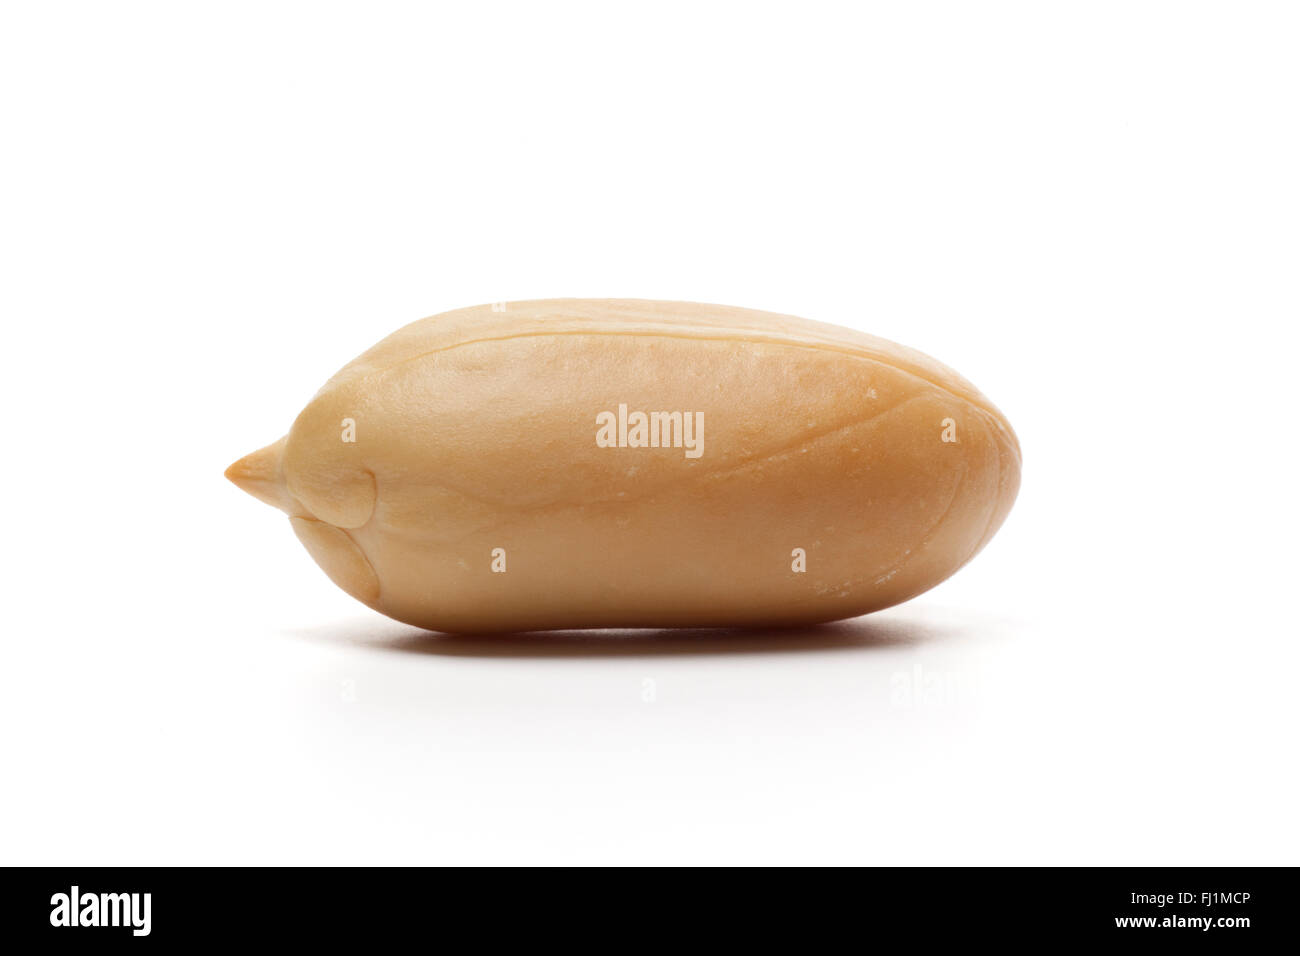 Single whole peeled peanut on white background Stock Photo